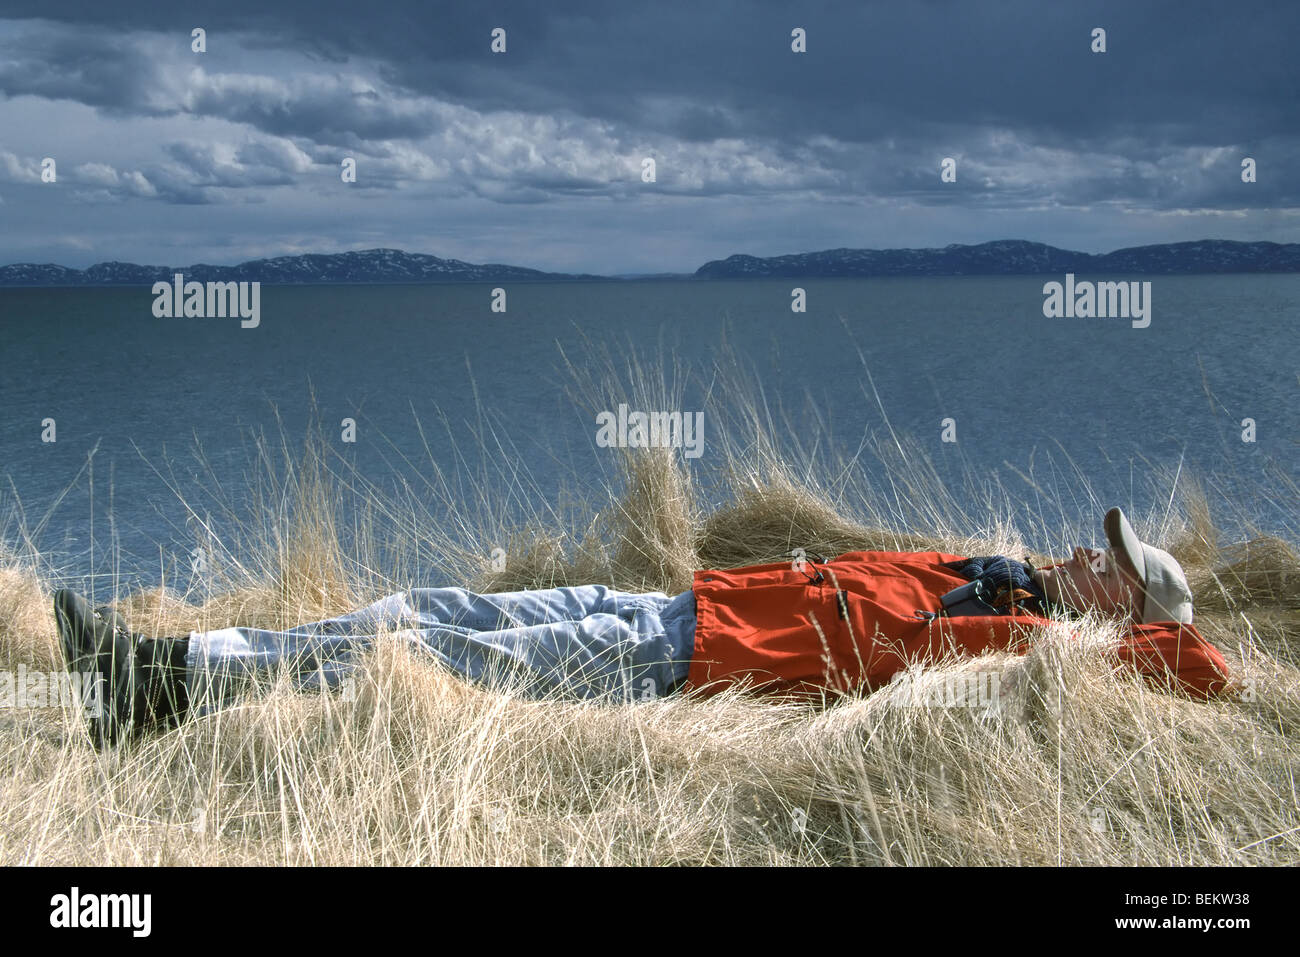 Relaxing birdwatcher in grass along coastline of Varangerfjord, Norway, Scandinavia Stock Photo